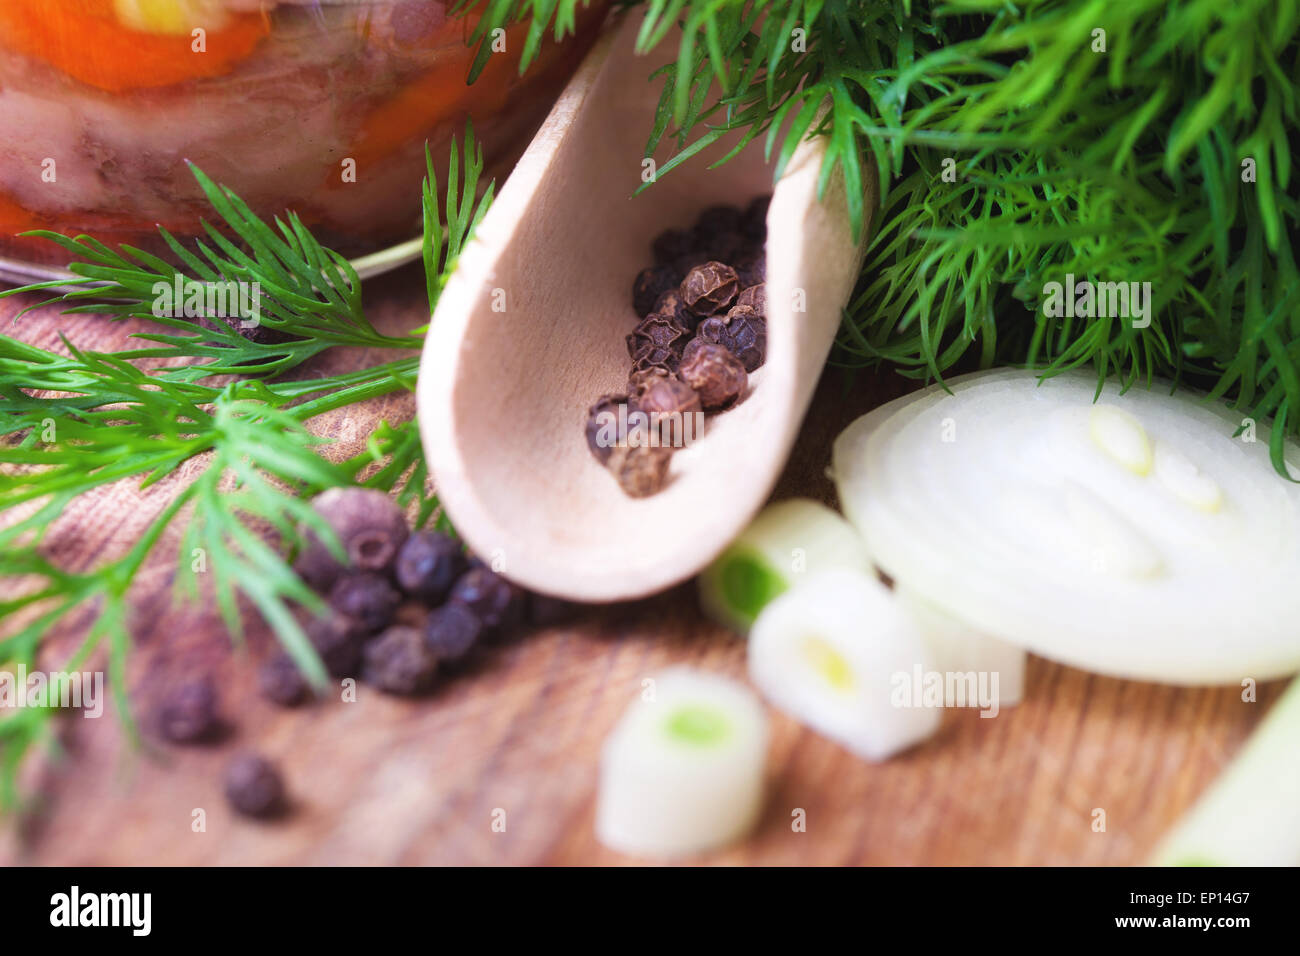 Herbes aromatiques, poivrons et oignons sur une table, close-up Banque D'Images